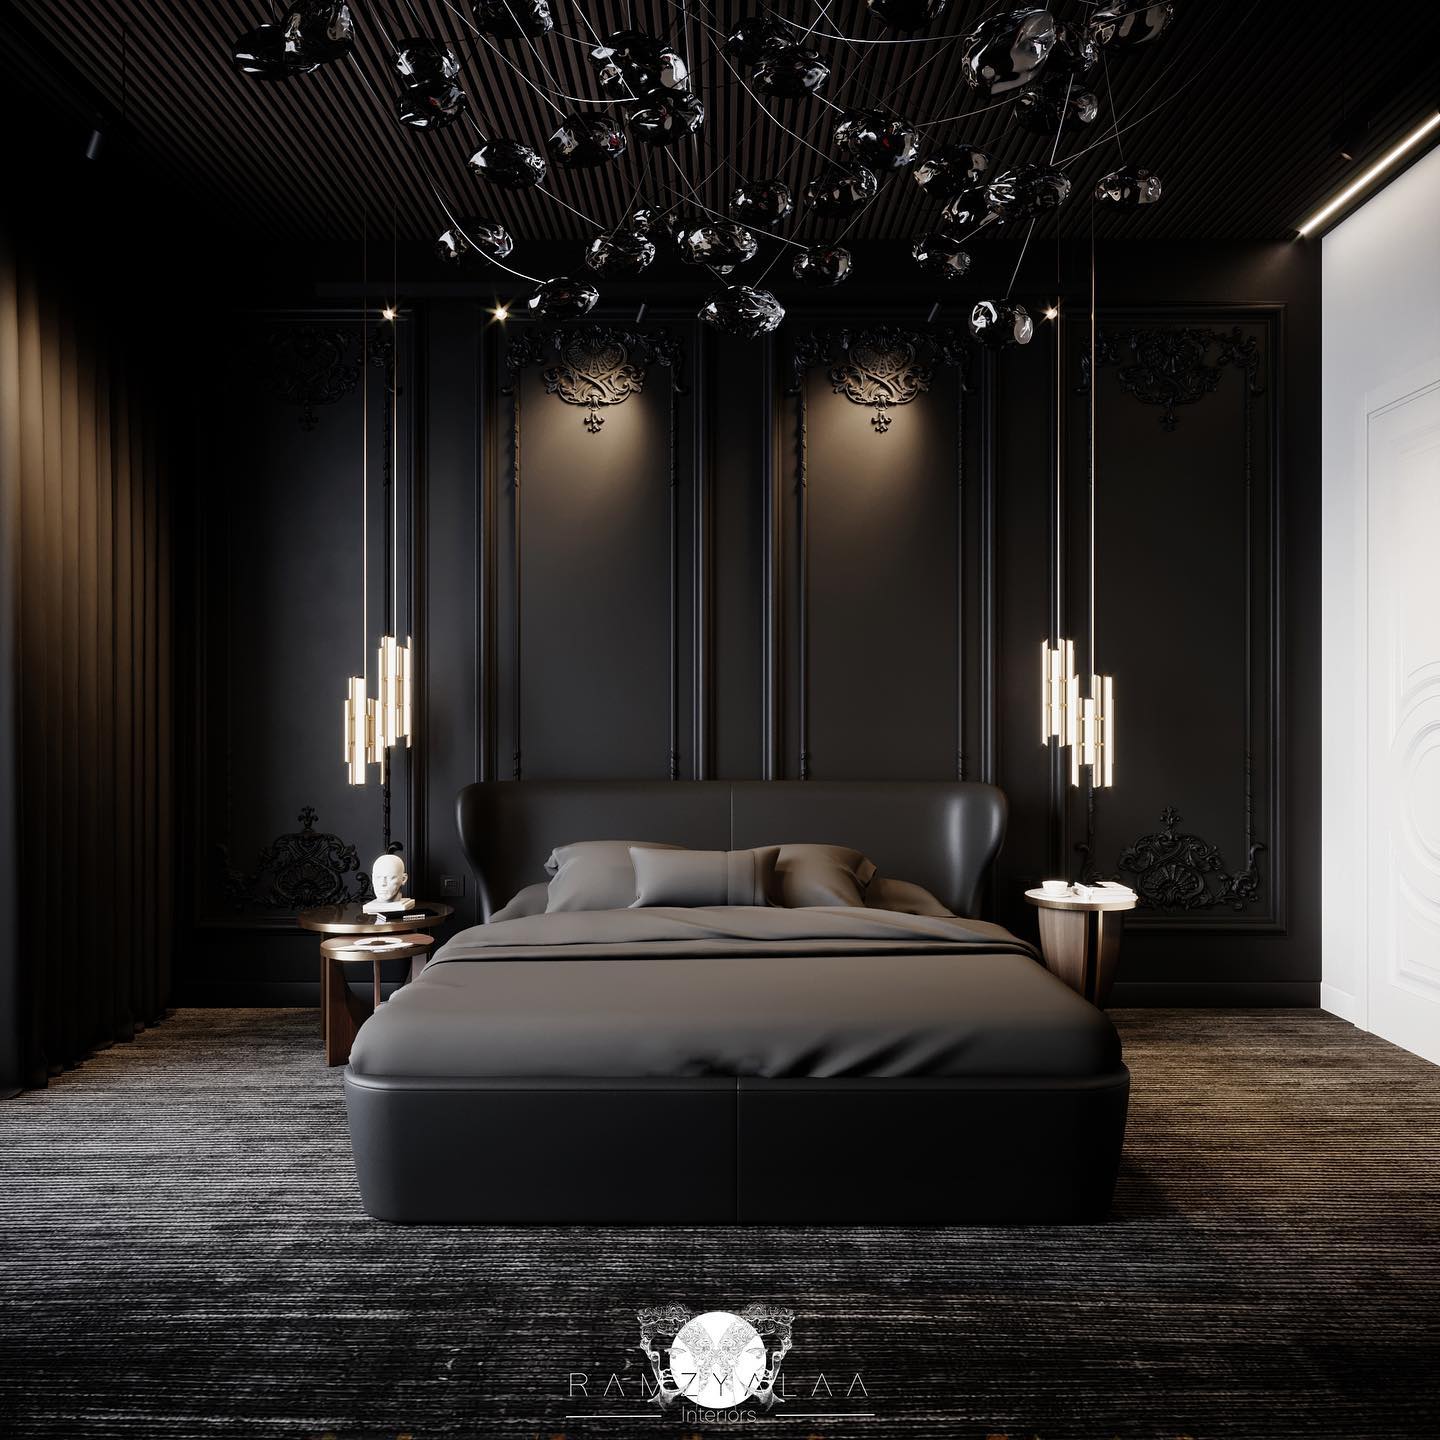 6 Thiết kế phòng ngủ master hiện đại tối màu giúp giấc ngủ ngon hơn » Thông  tin Dự án - Cập nhật tin tức Bất Động Sản mới nhất